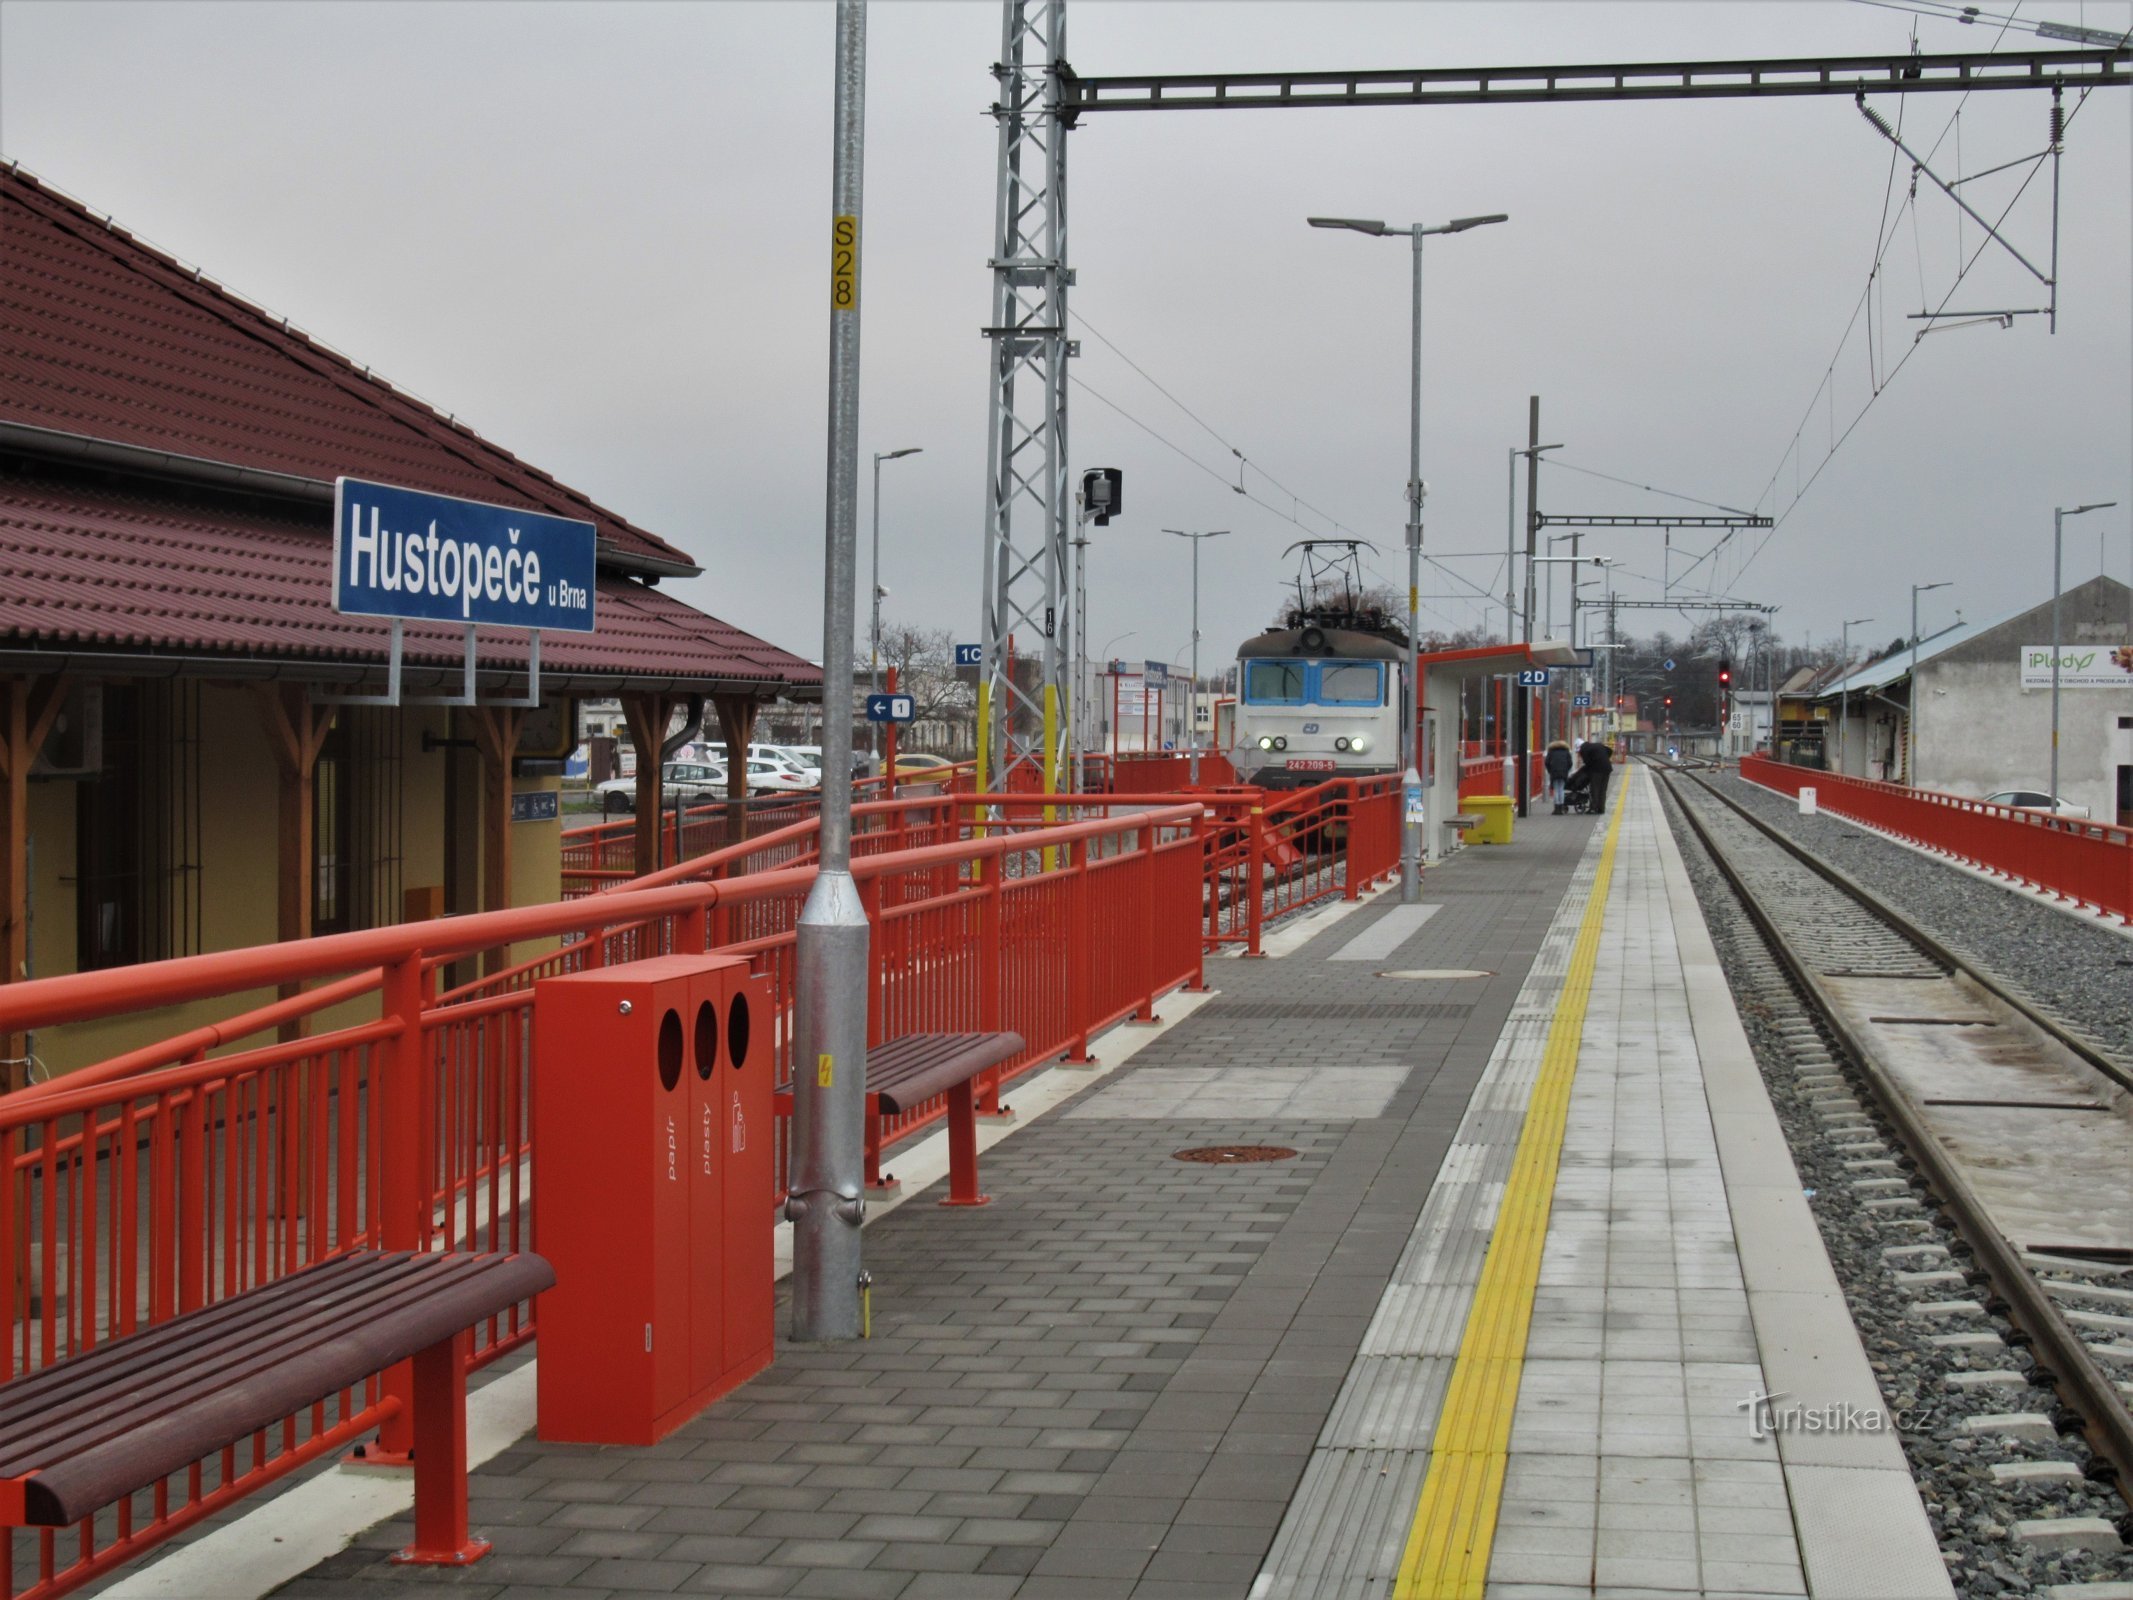 Nyöppnad elektrifierad station med tågankomst i december 2020